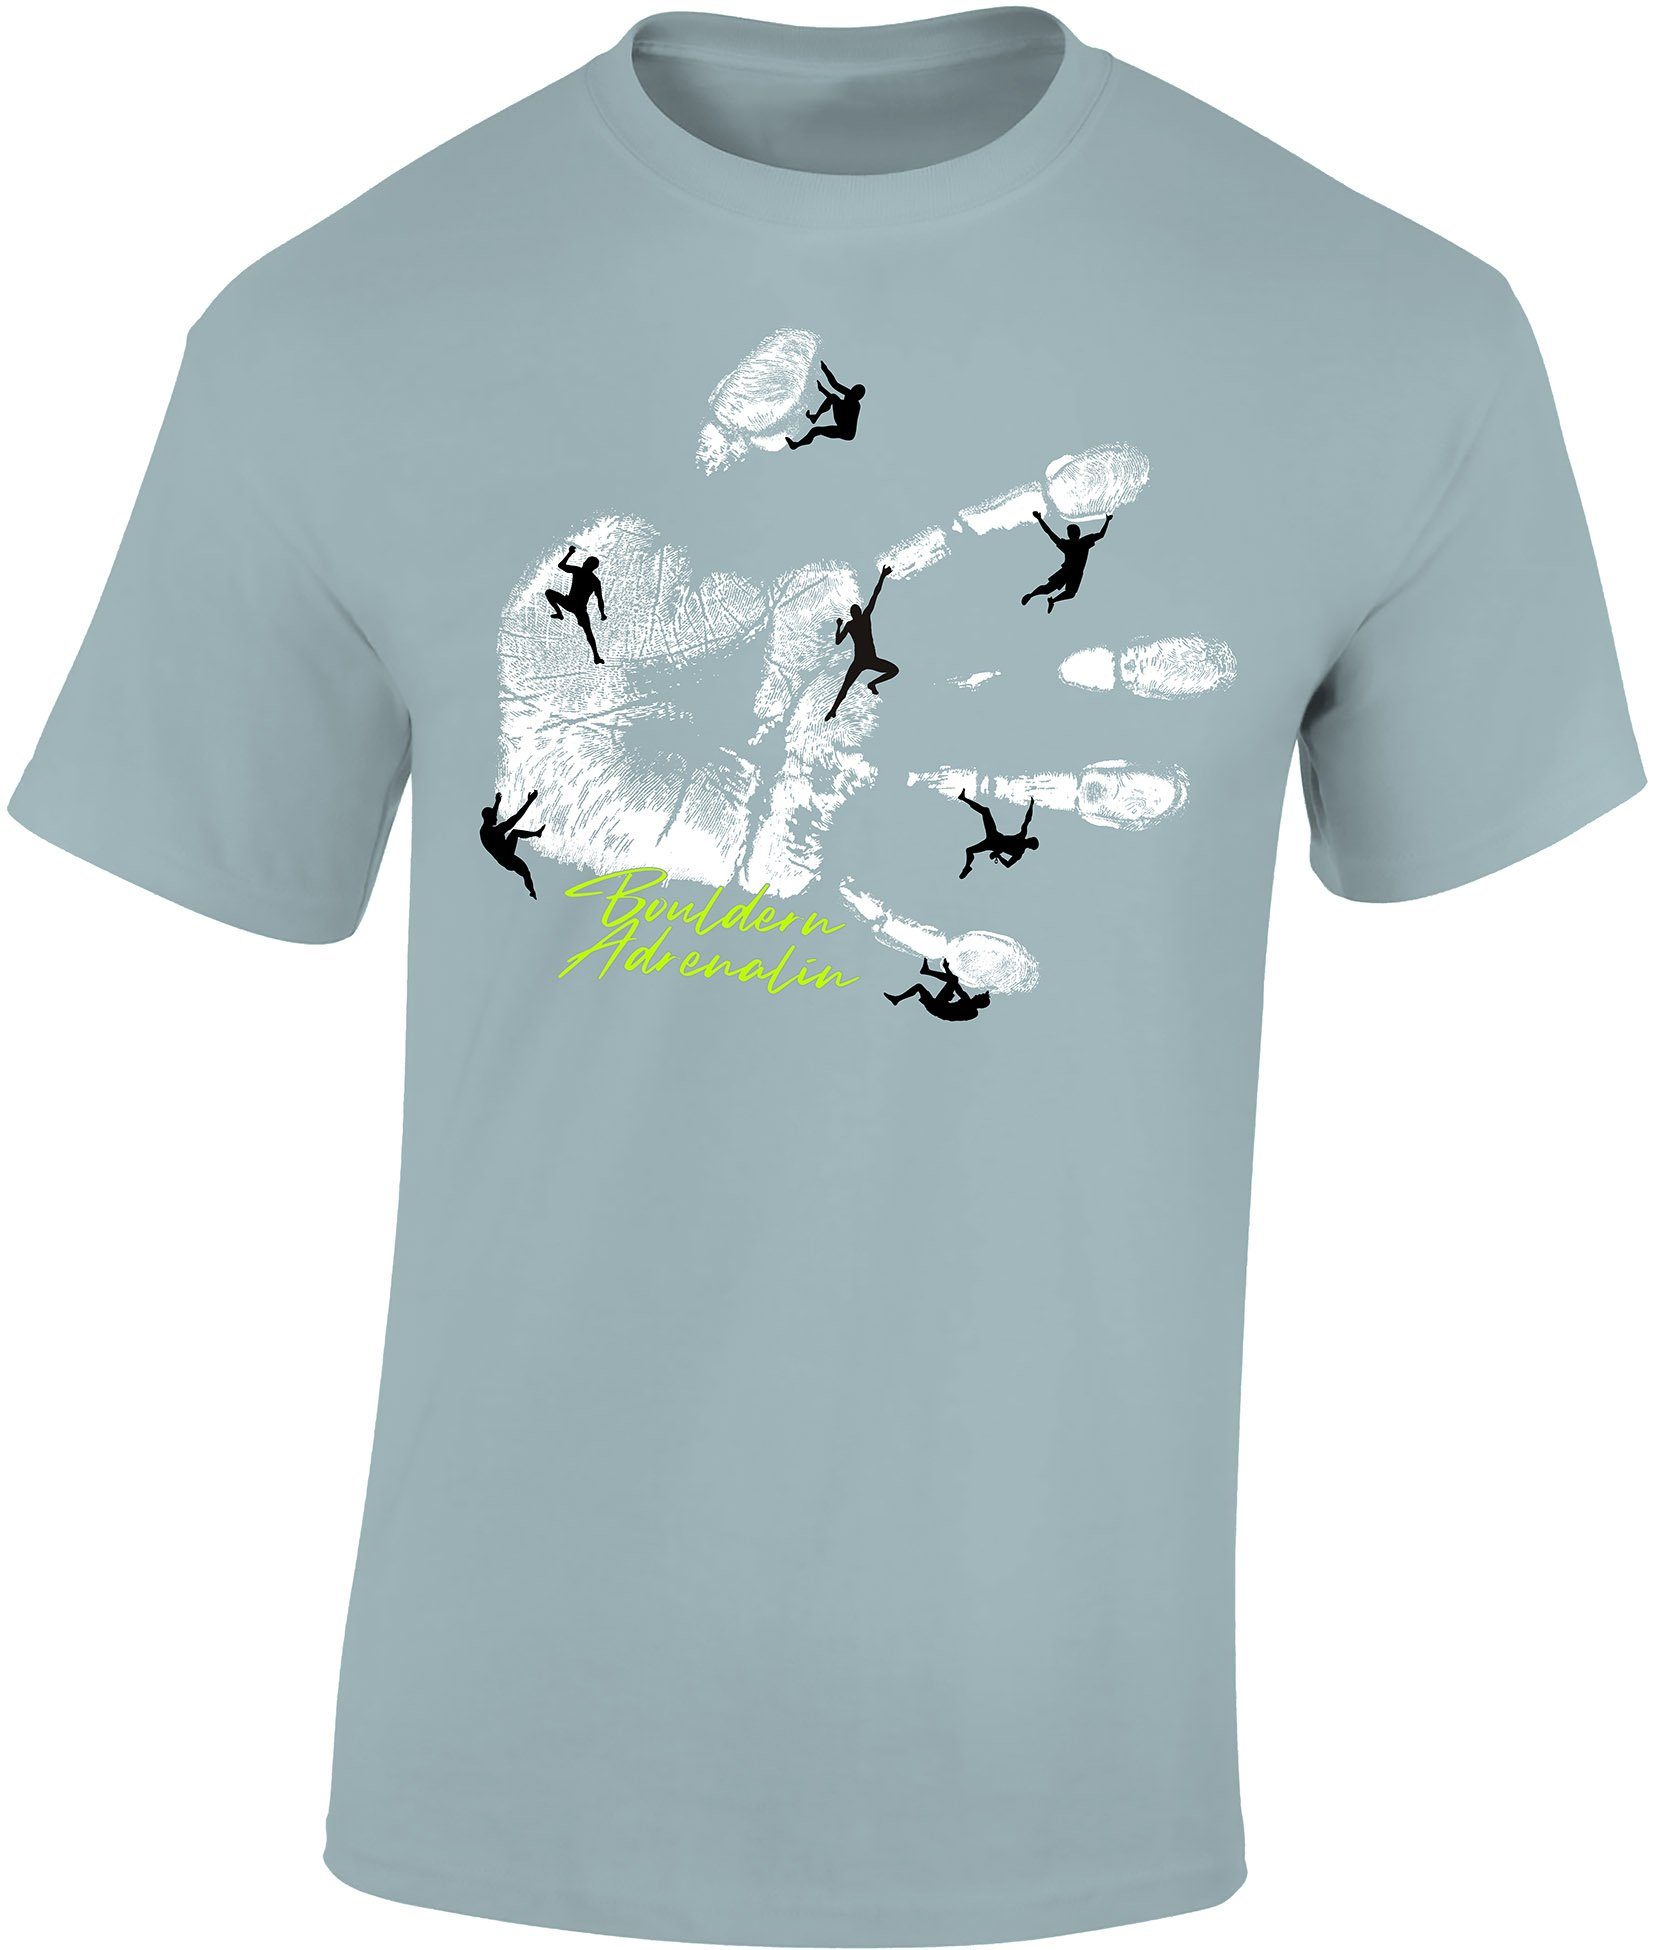 Baddery Print-Shirt Kletter Shirt : Bouldern Adrenalin - T-Shirt Kletter Zubehör, hochwertiger Siebdruck, auch Übergrößen, aus Baumwolle